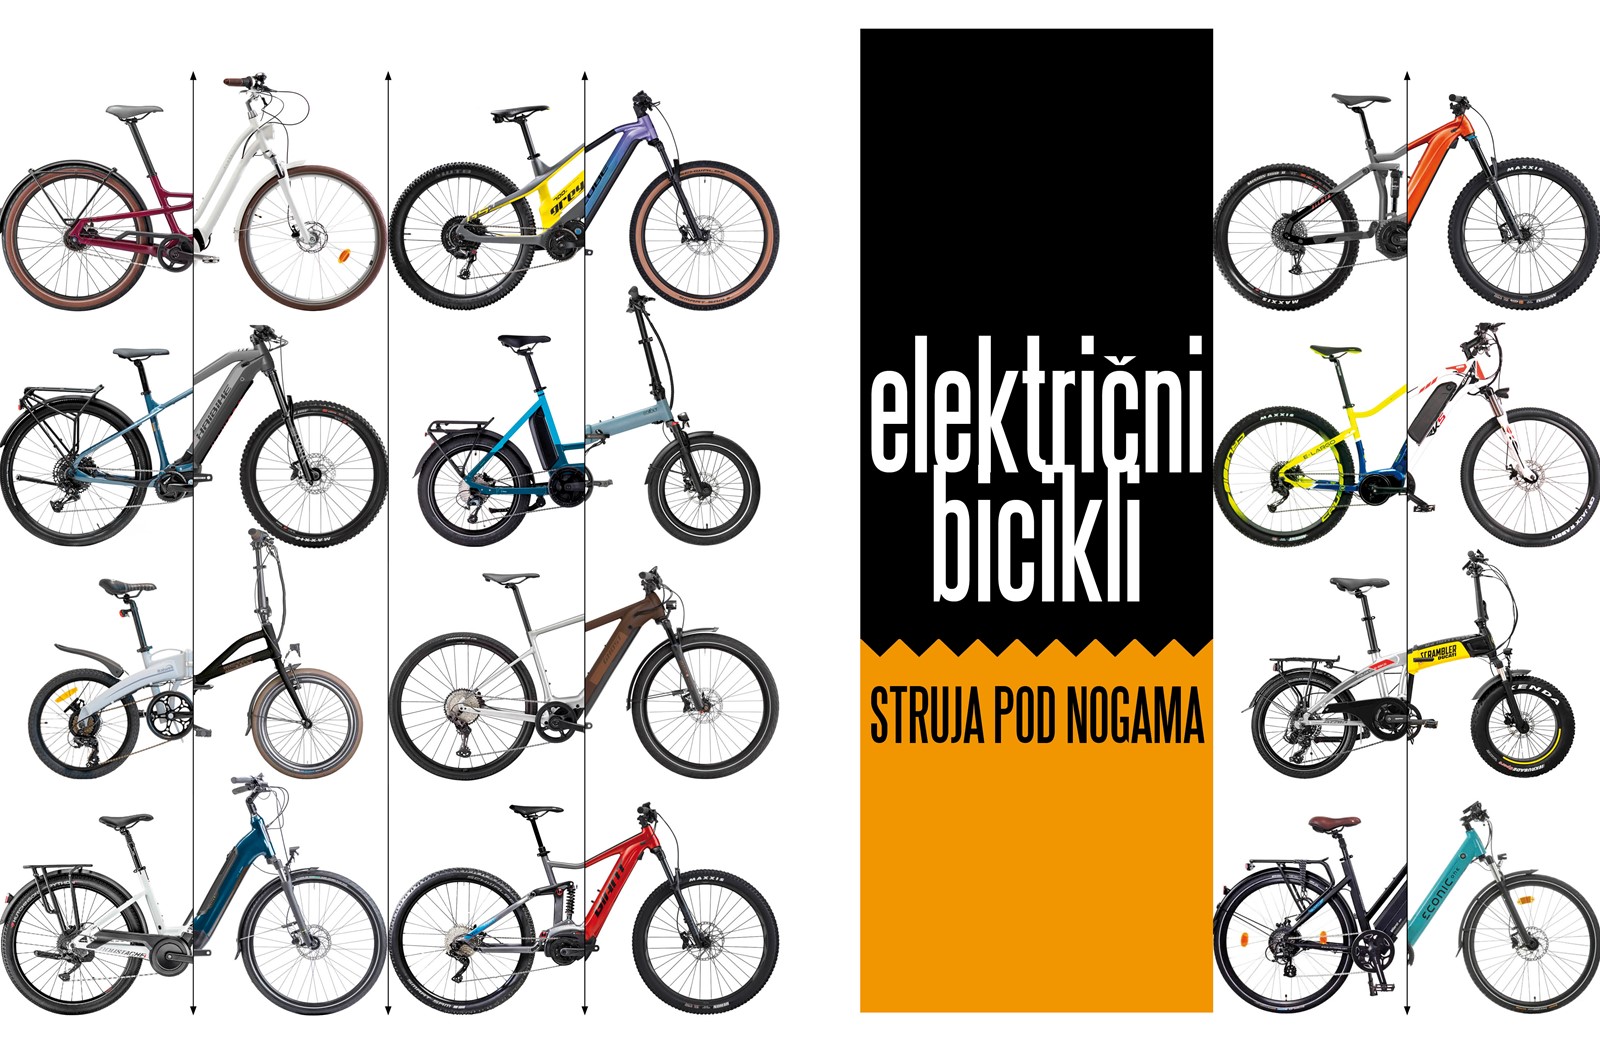 Električni bicikli - Struja pod nogama - Tema broja @ Bug.hr